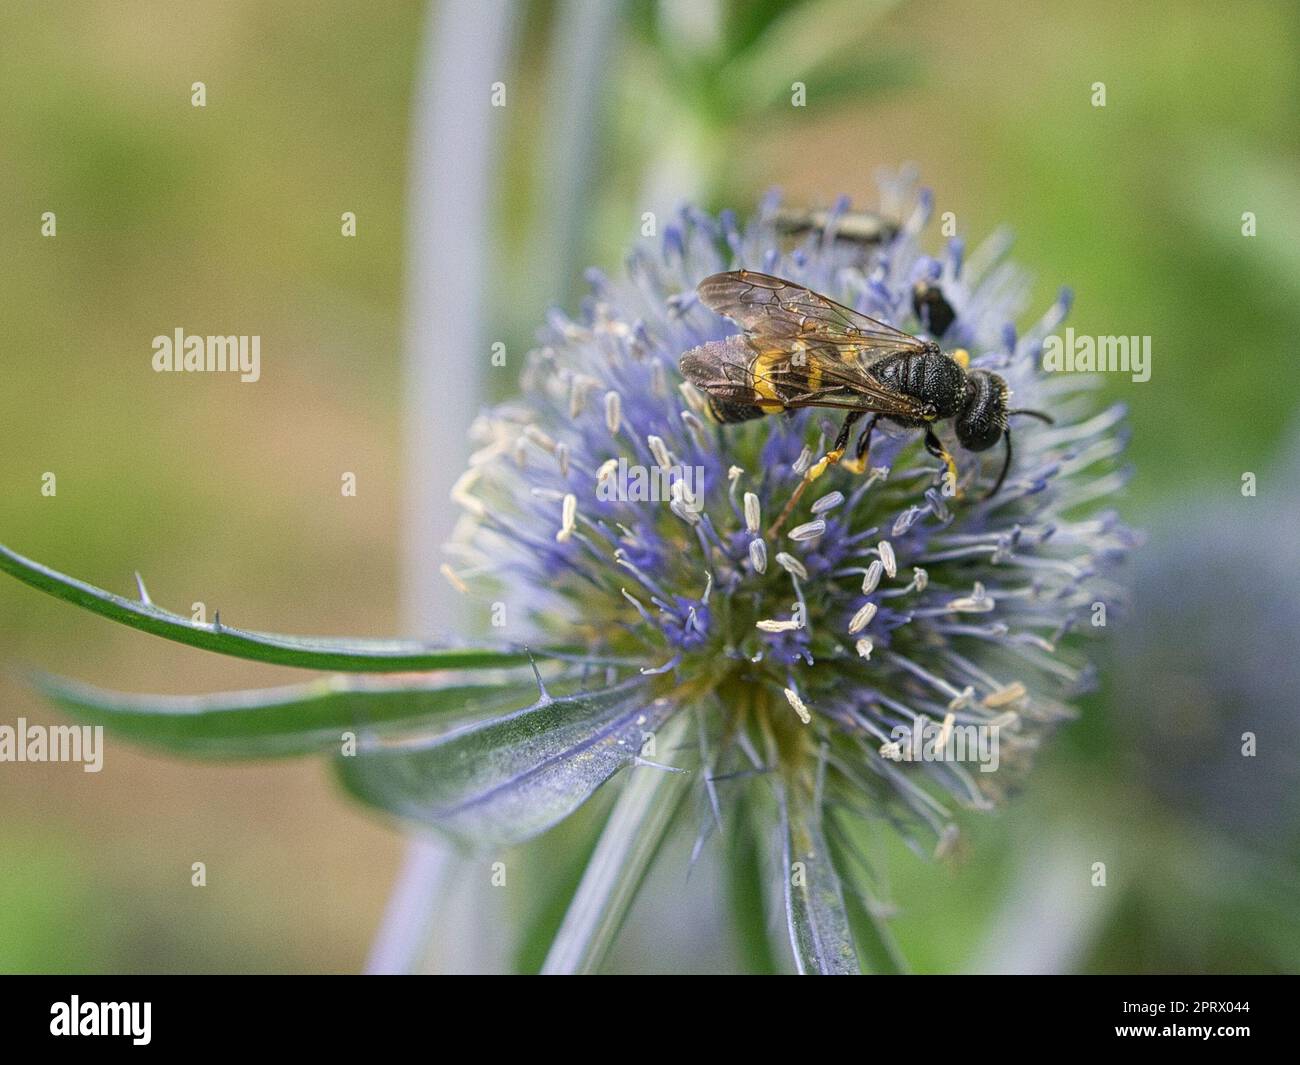 strisciare lo scarabeo su un fiore in macro fotografia. Foto Stock